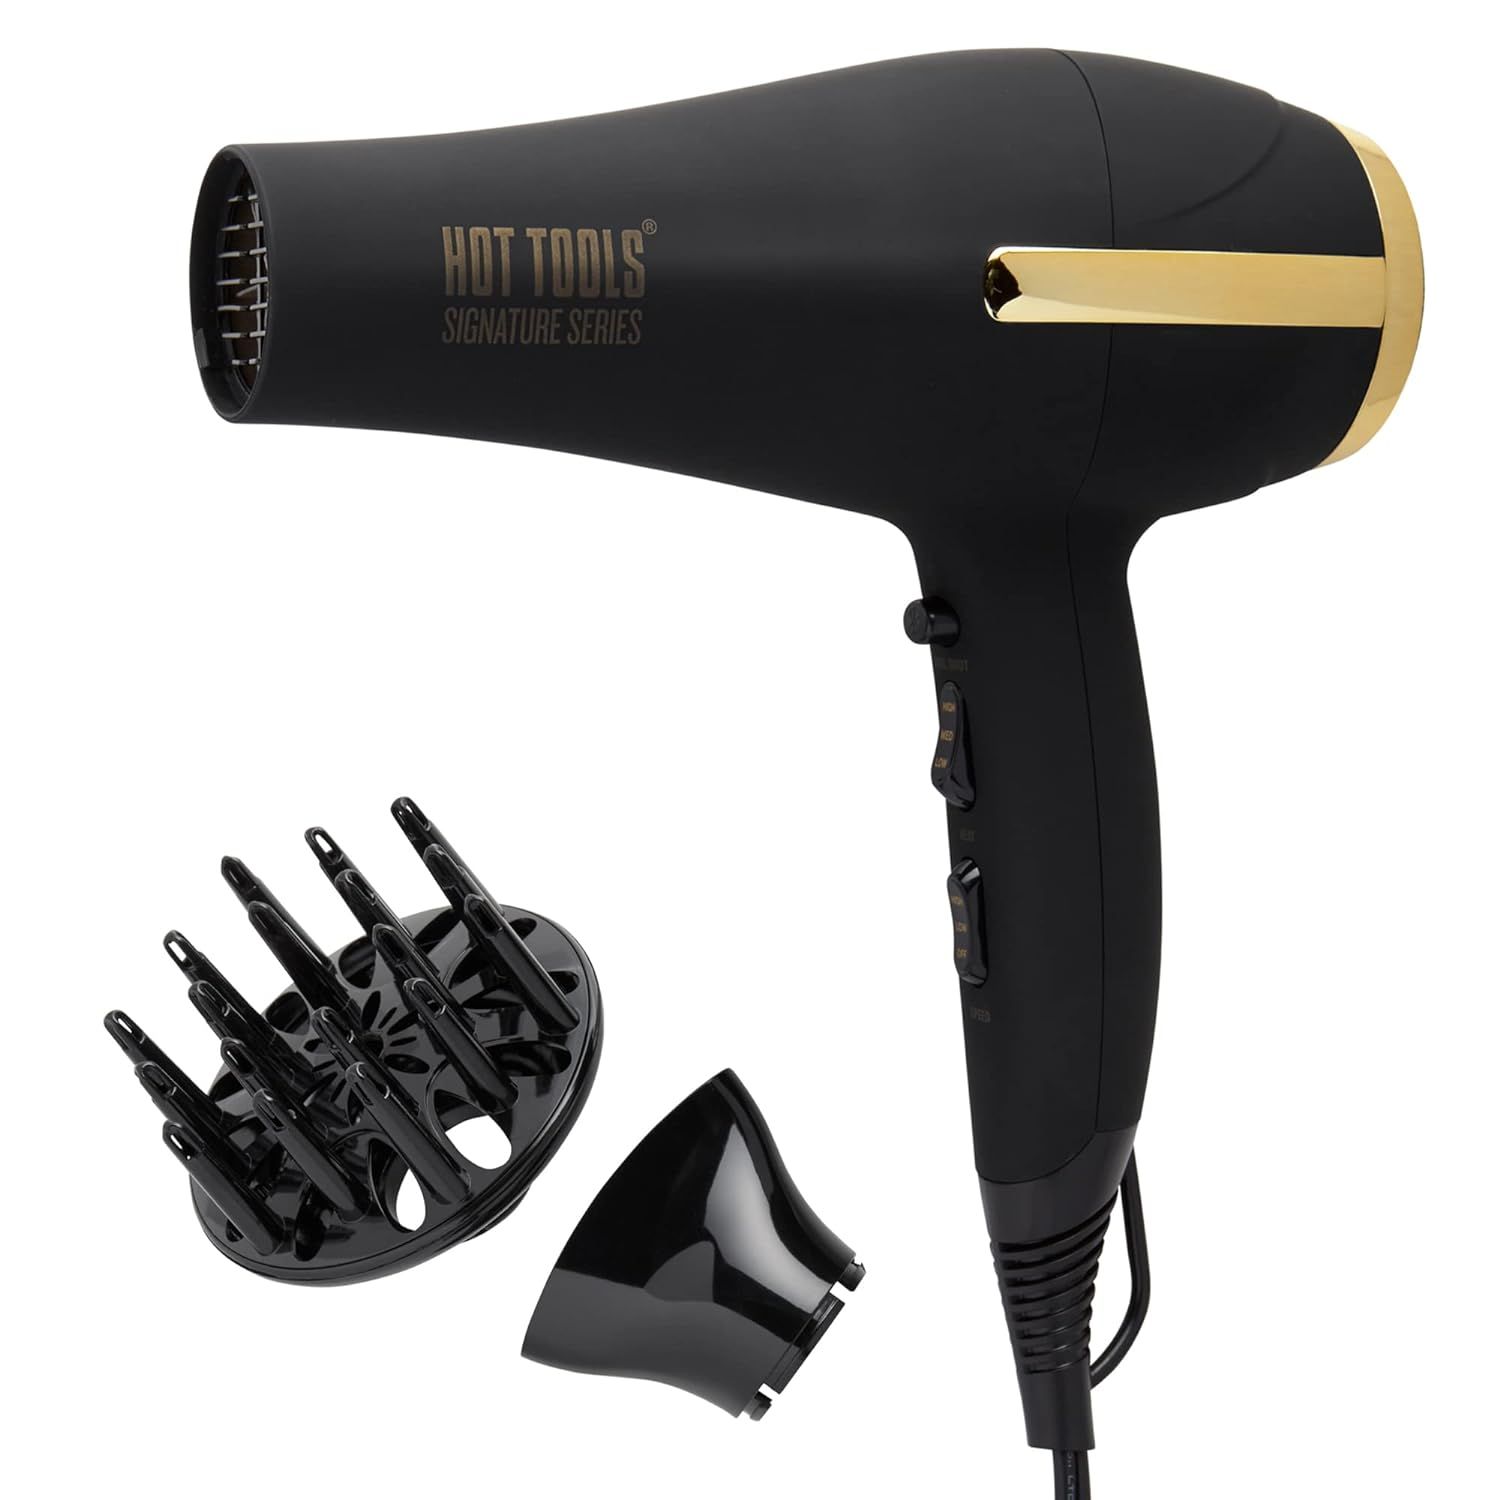 HOT TOOLS Pro Signature Ionic 2200 Turbo Ceramic Hair Dryer | Amazon (US)